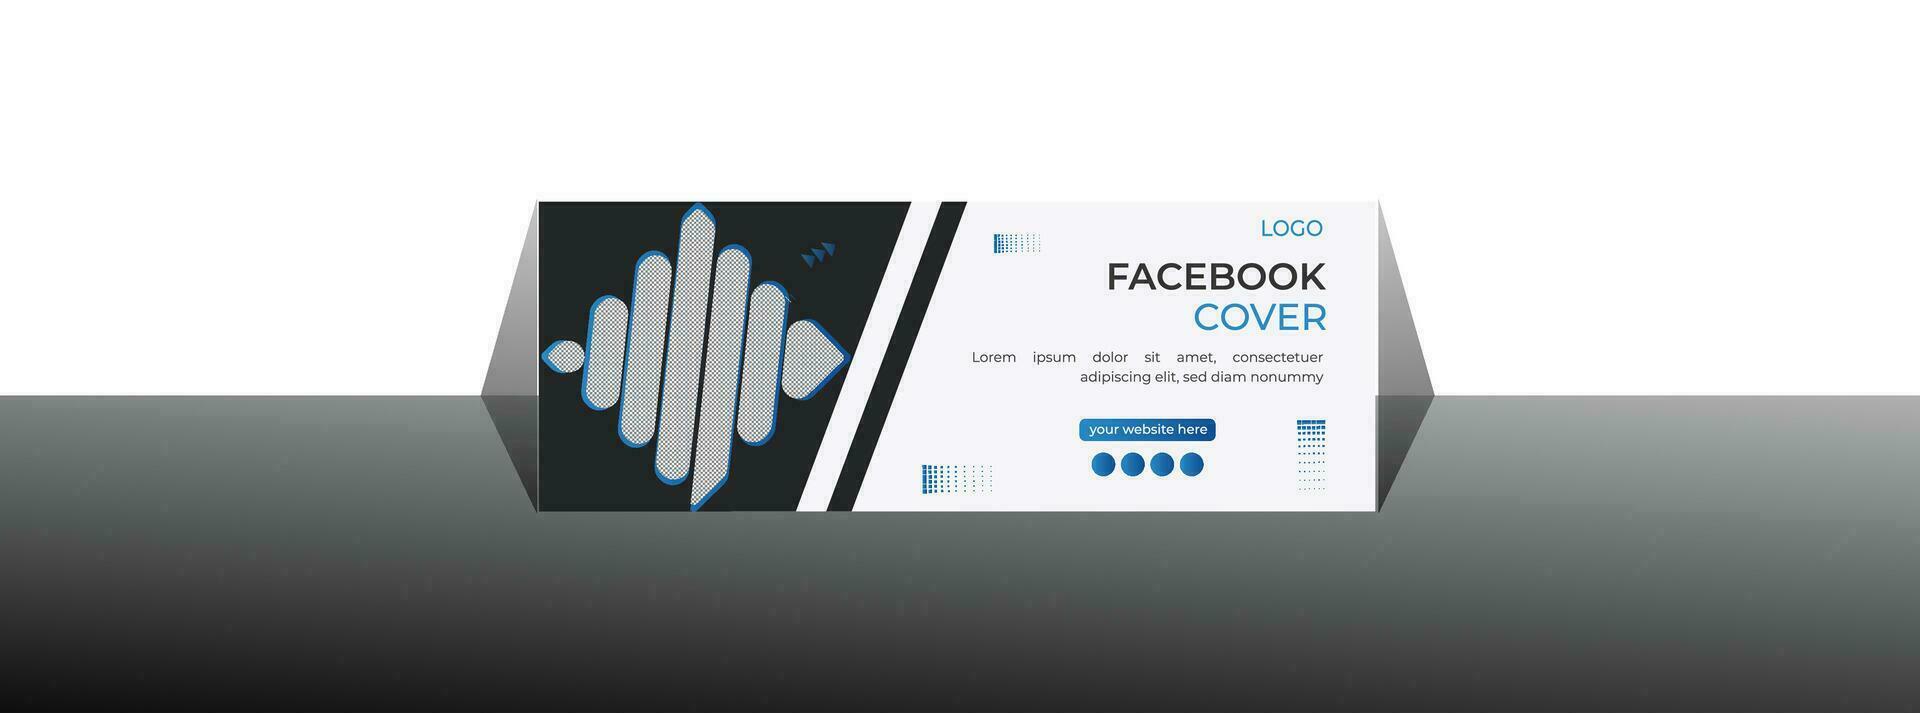 modern Facebook cover design vector